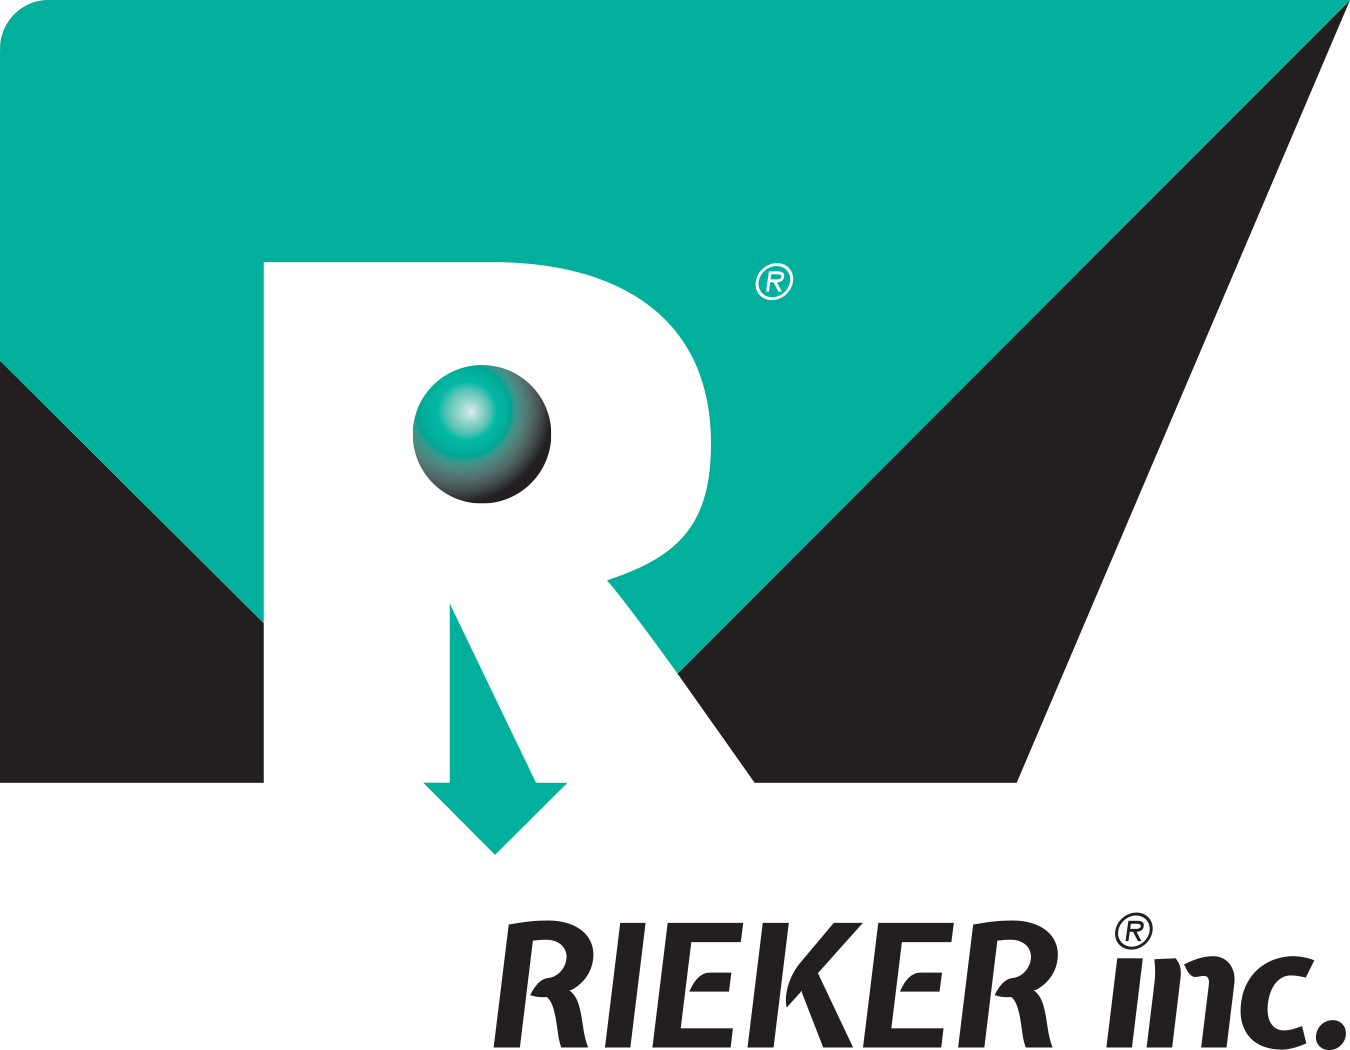 Rieker Inc.